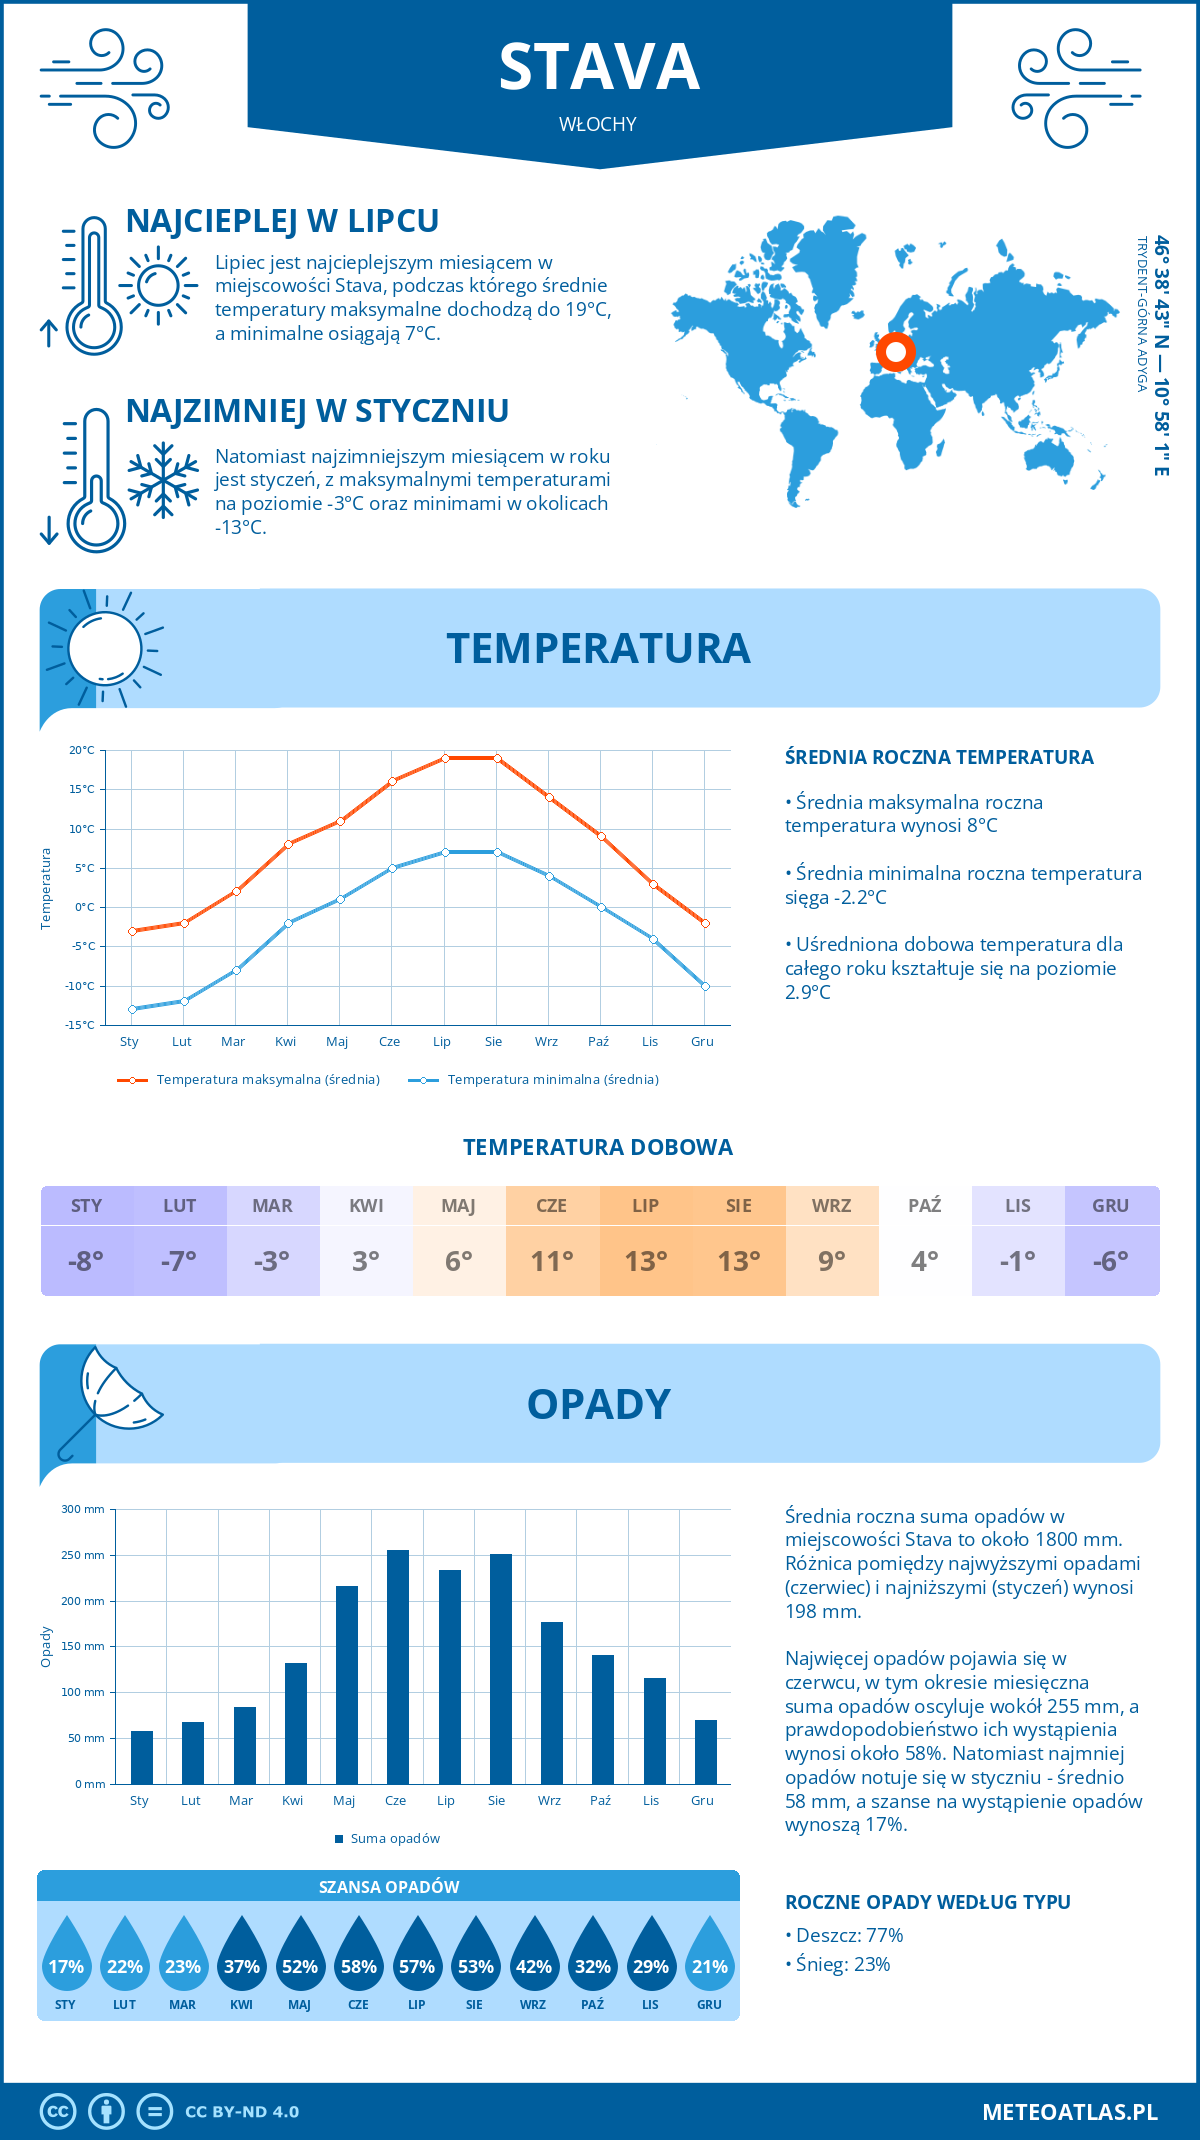 Pogoda Stava (Włochy). Temperatura oraz opady.